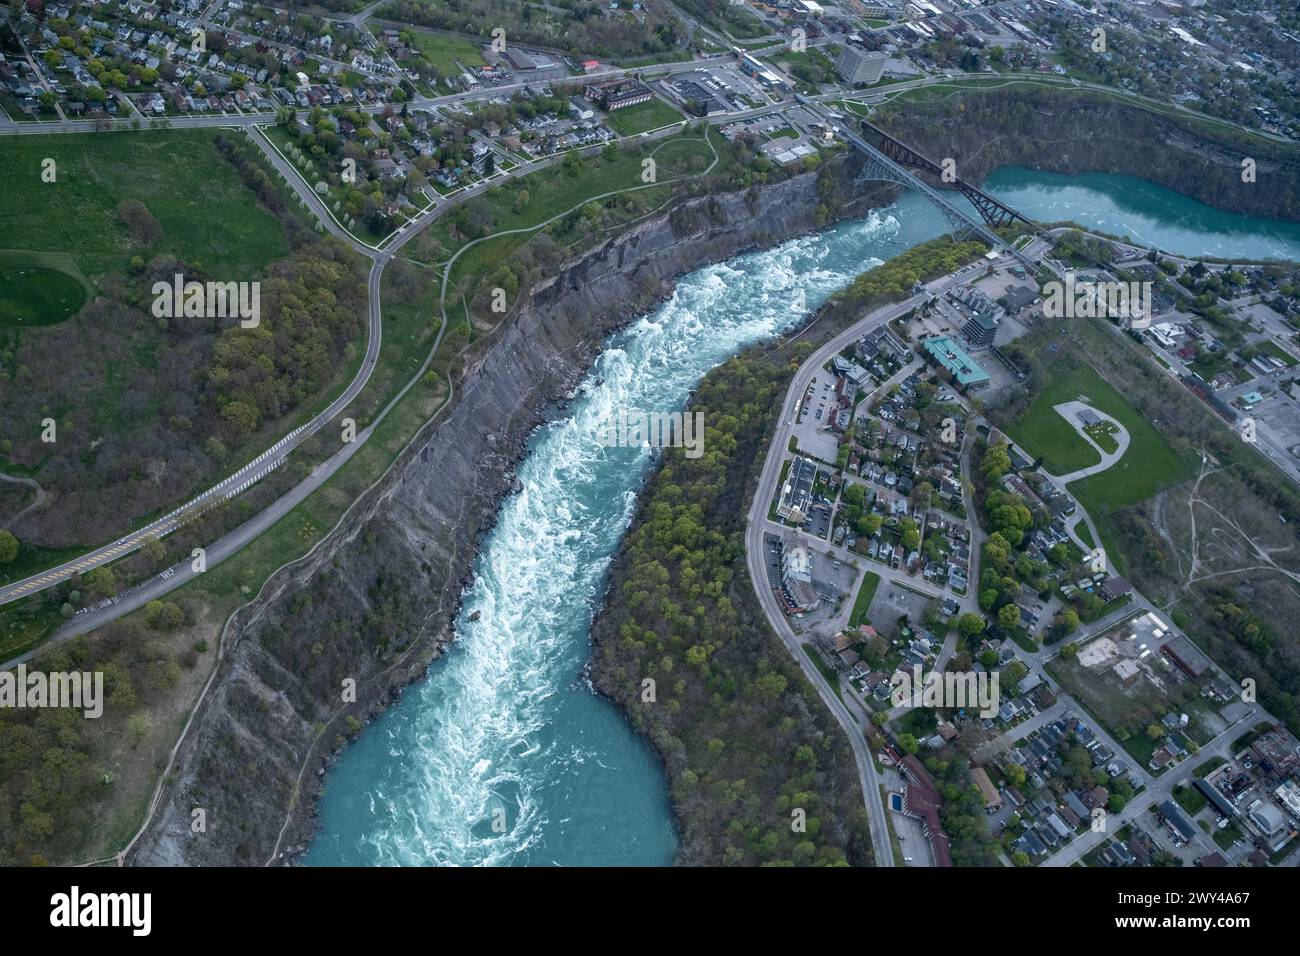 Vista aerea delle Cascate del Niagara dal fiume Niagara, il confine naturale tra la provincia dell'Ontario in Canada e lo stato di New York nell'uni Foto Stock